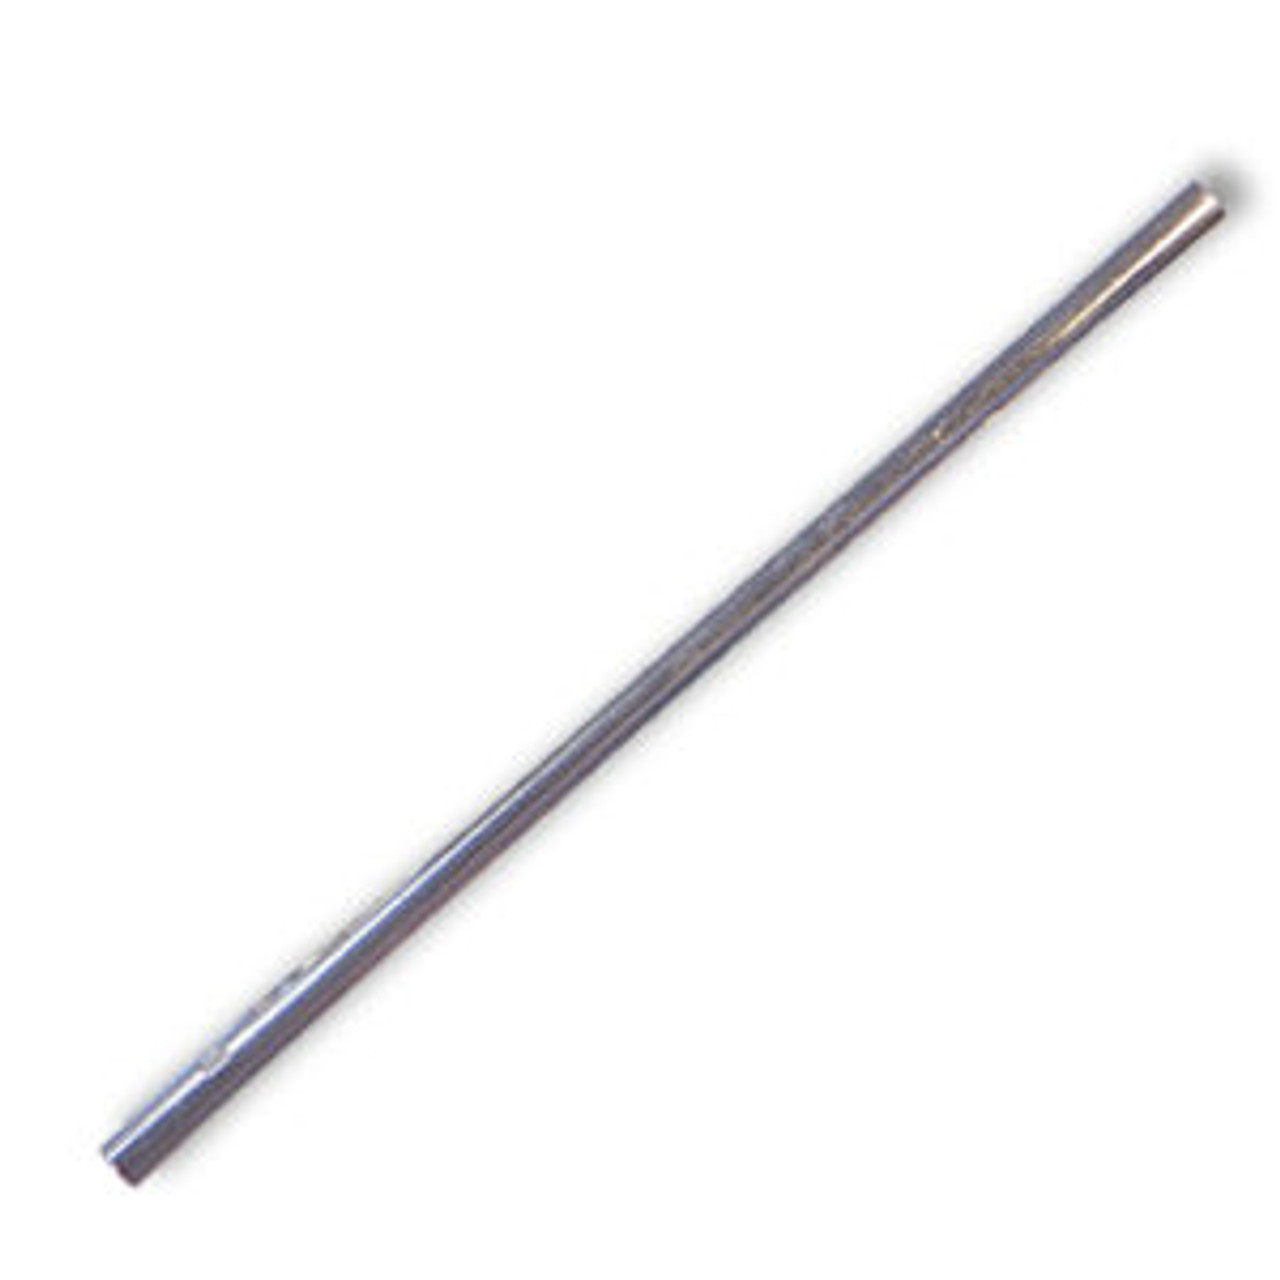 Tubular Tie Rod 10.5" Length (Tie Rod Only) 5/16-24 Thread